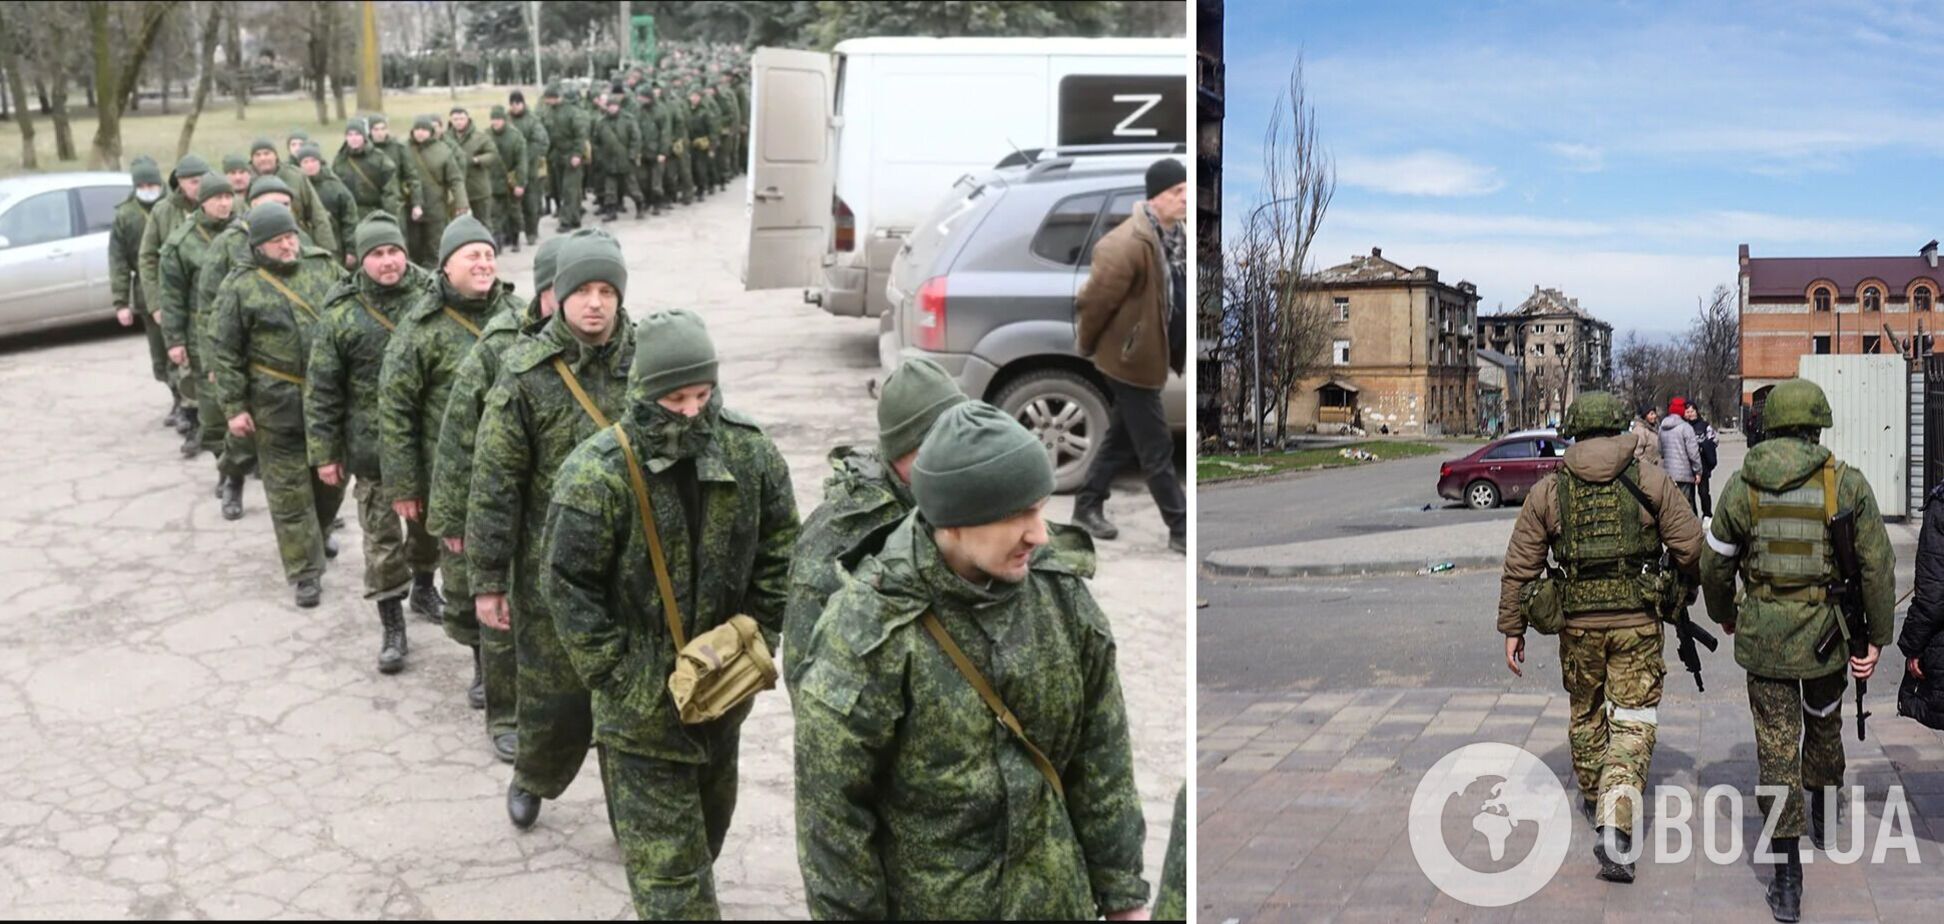 Регионы РФ объявляют о 'самомобилизации' и создании новых 'добровольческих батальонов' для войны в Украине – ISW